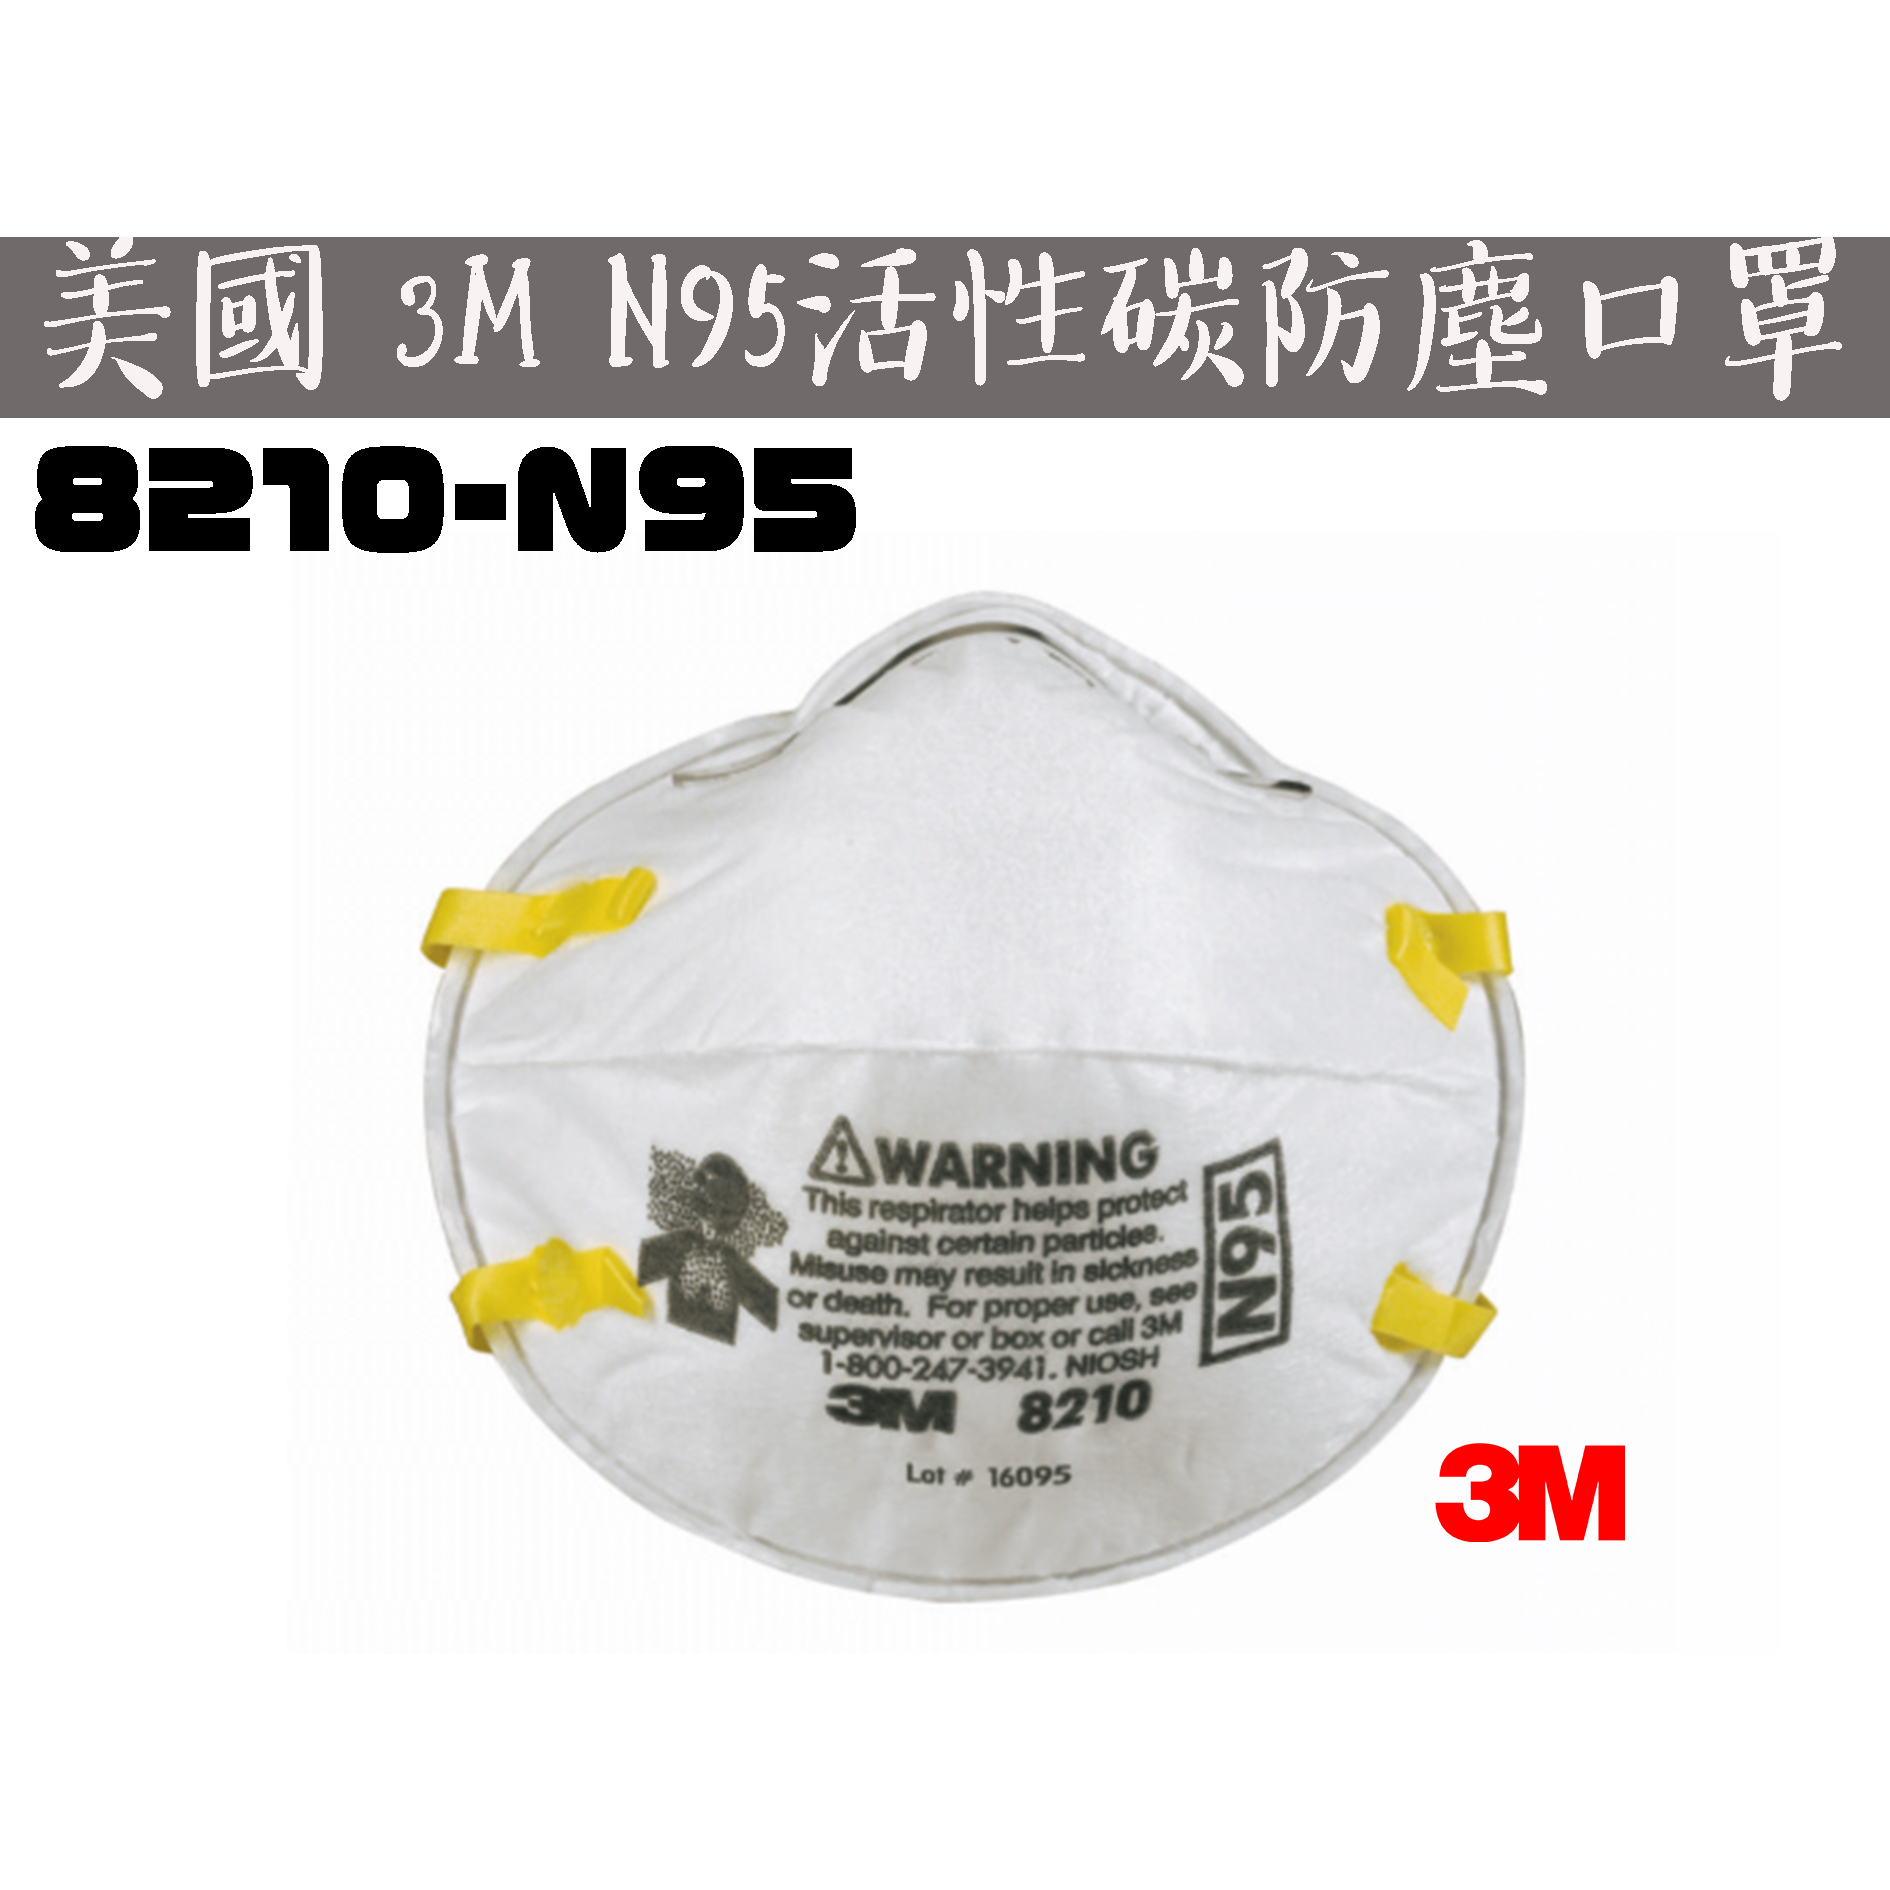 【台南丸豐工具】【美國3M N95 拋棄式防塵口罩 碗型口罩 衛生口罩 8210】